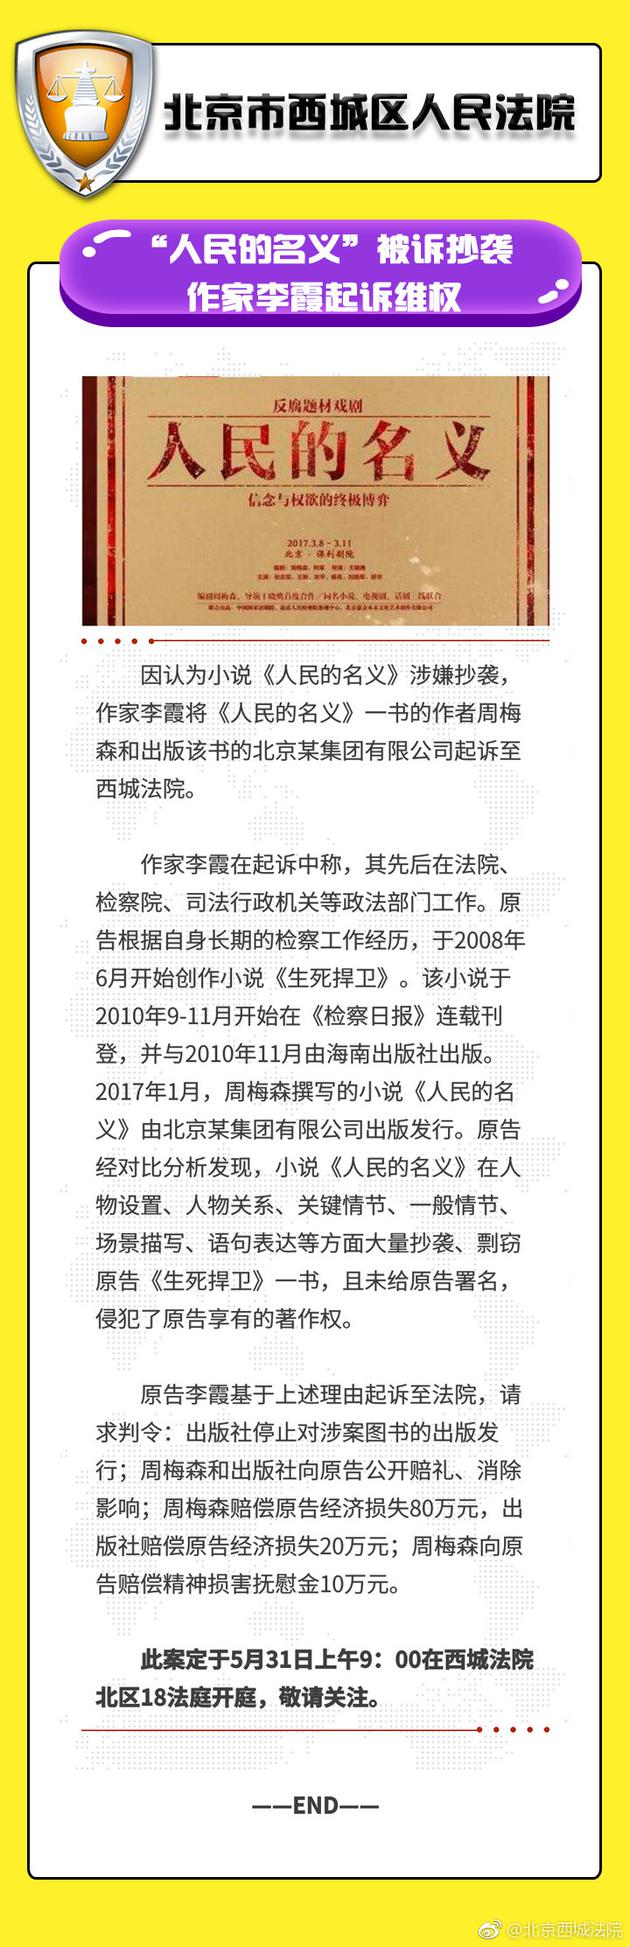 北京西城法院關於該案件的公告